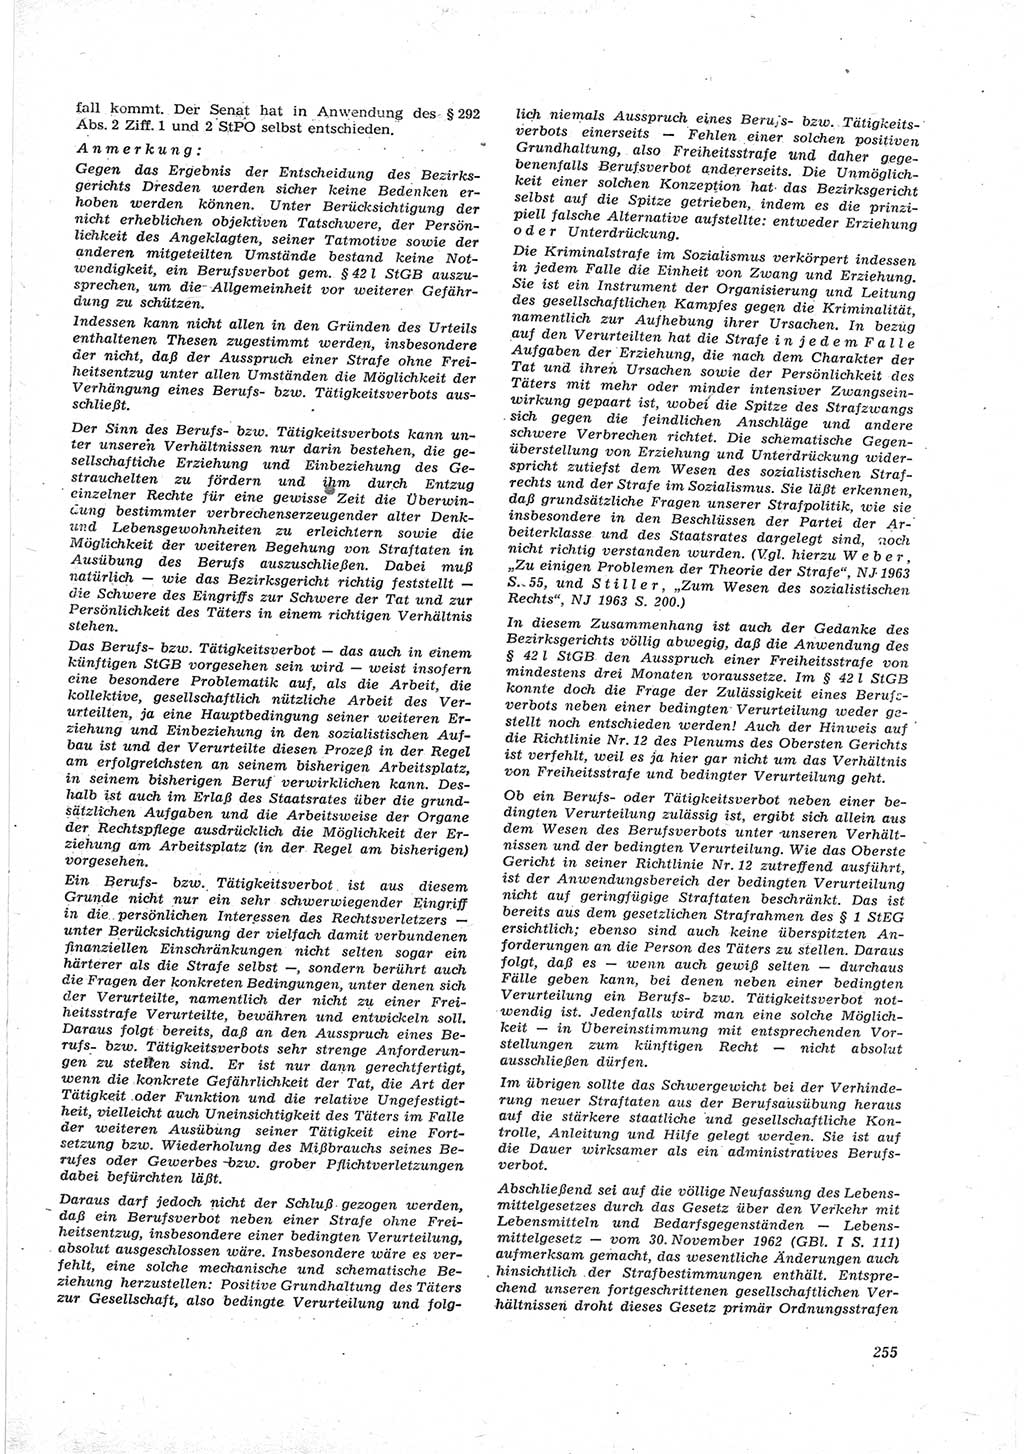 Neue Justiz (NJ), Zeitschrift für Recht und Rechtswissenschaft [Deutsche Demokratische Republik (DDR)], 17. Jahrgang 1963, Seite 255 (NJ DDR 1963, S. 255)